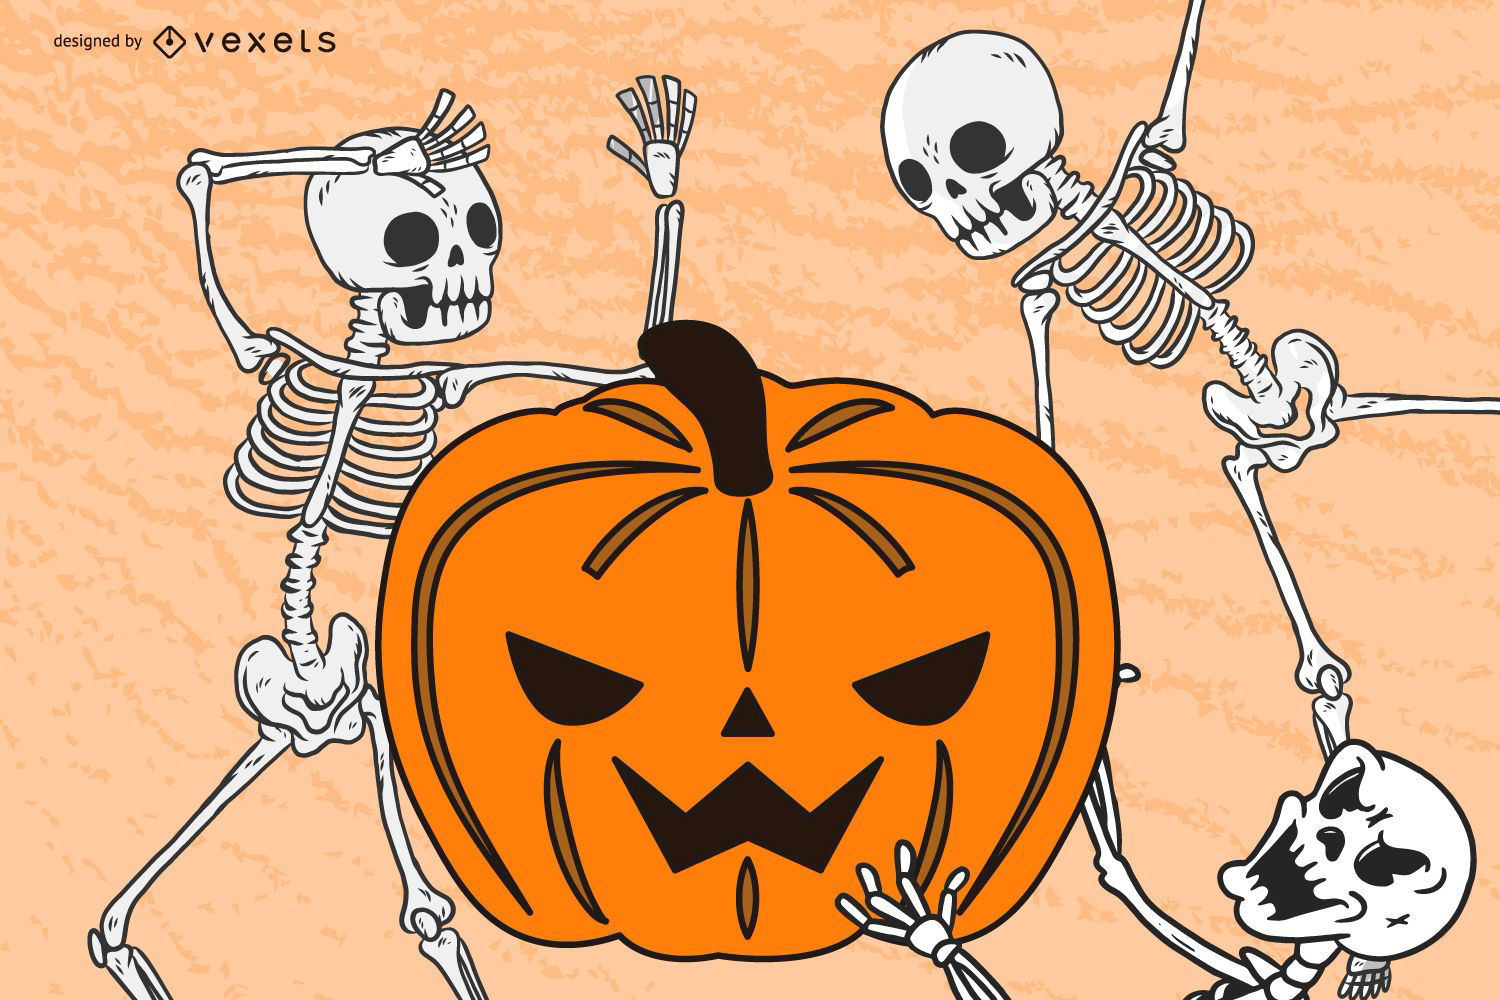 Pumpkin and skeletons illustration